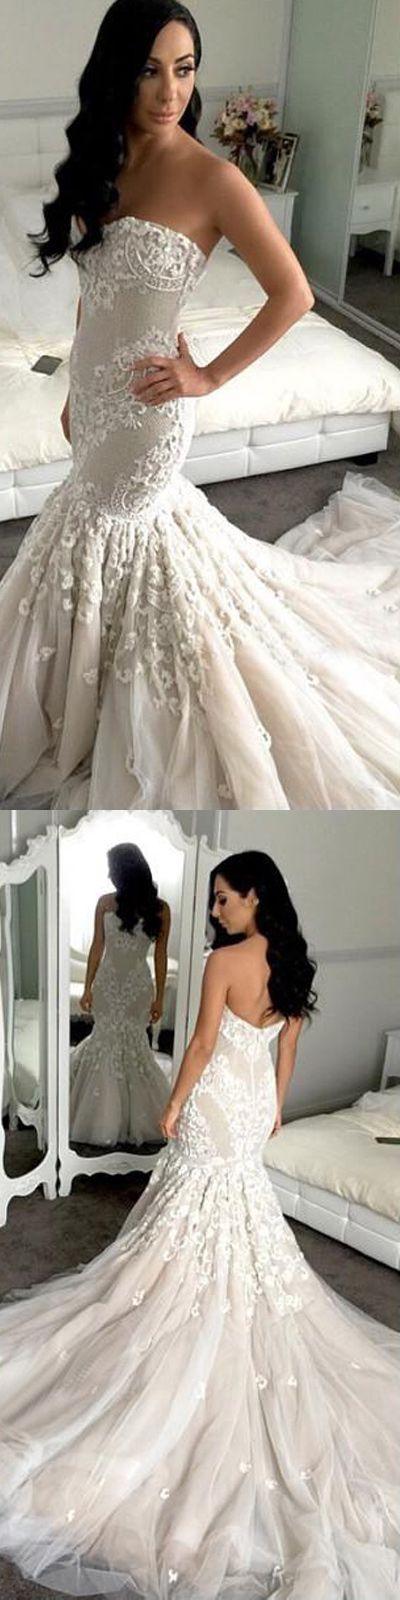 زفاف - Dream Wedding Styles